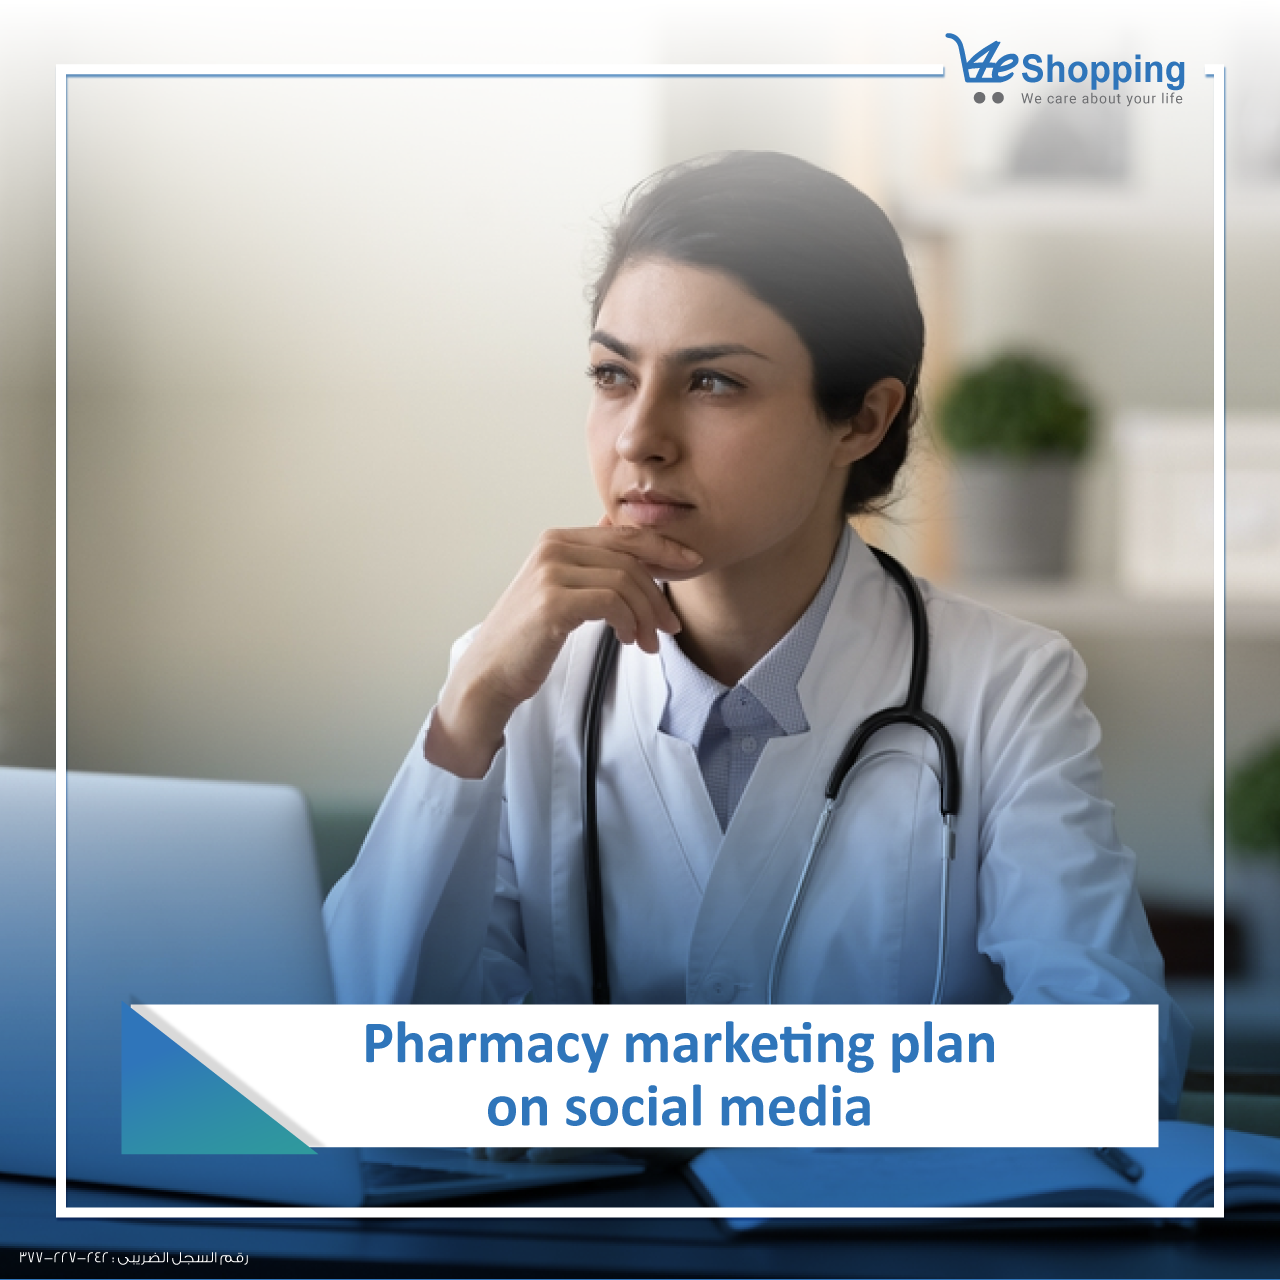 Pharmacy on social media